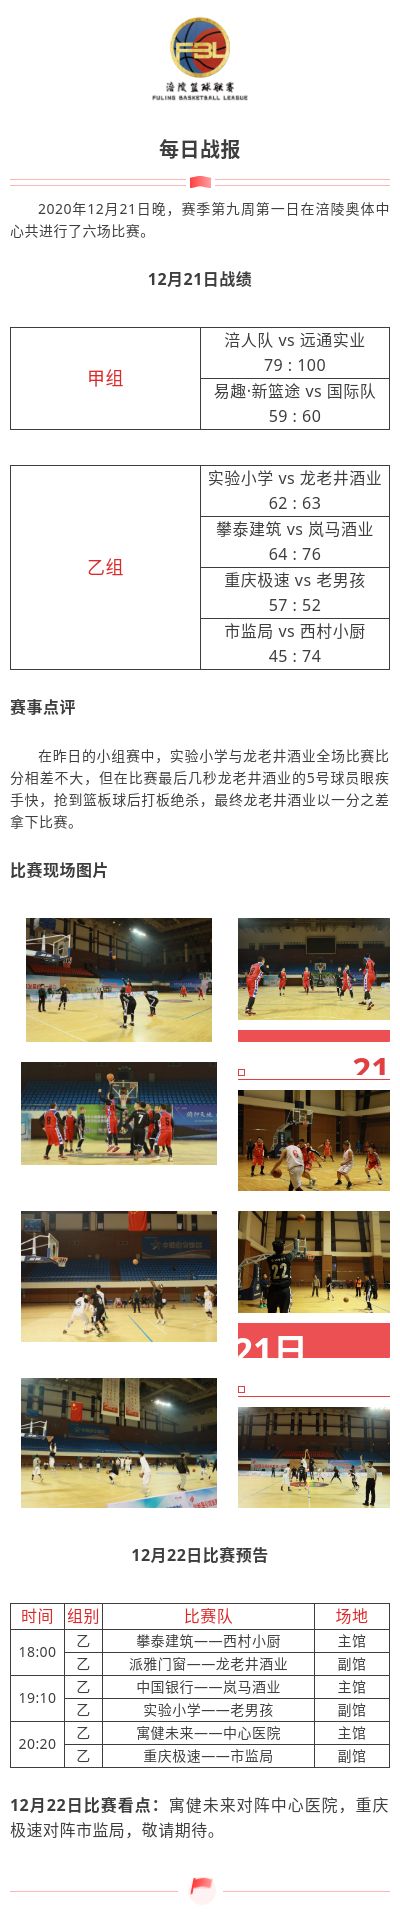 涪陵高新区·涪陵篮球联赛（FBL）2020赛季每日战报12.21